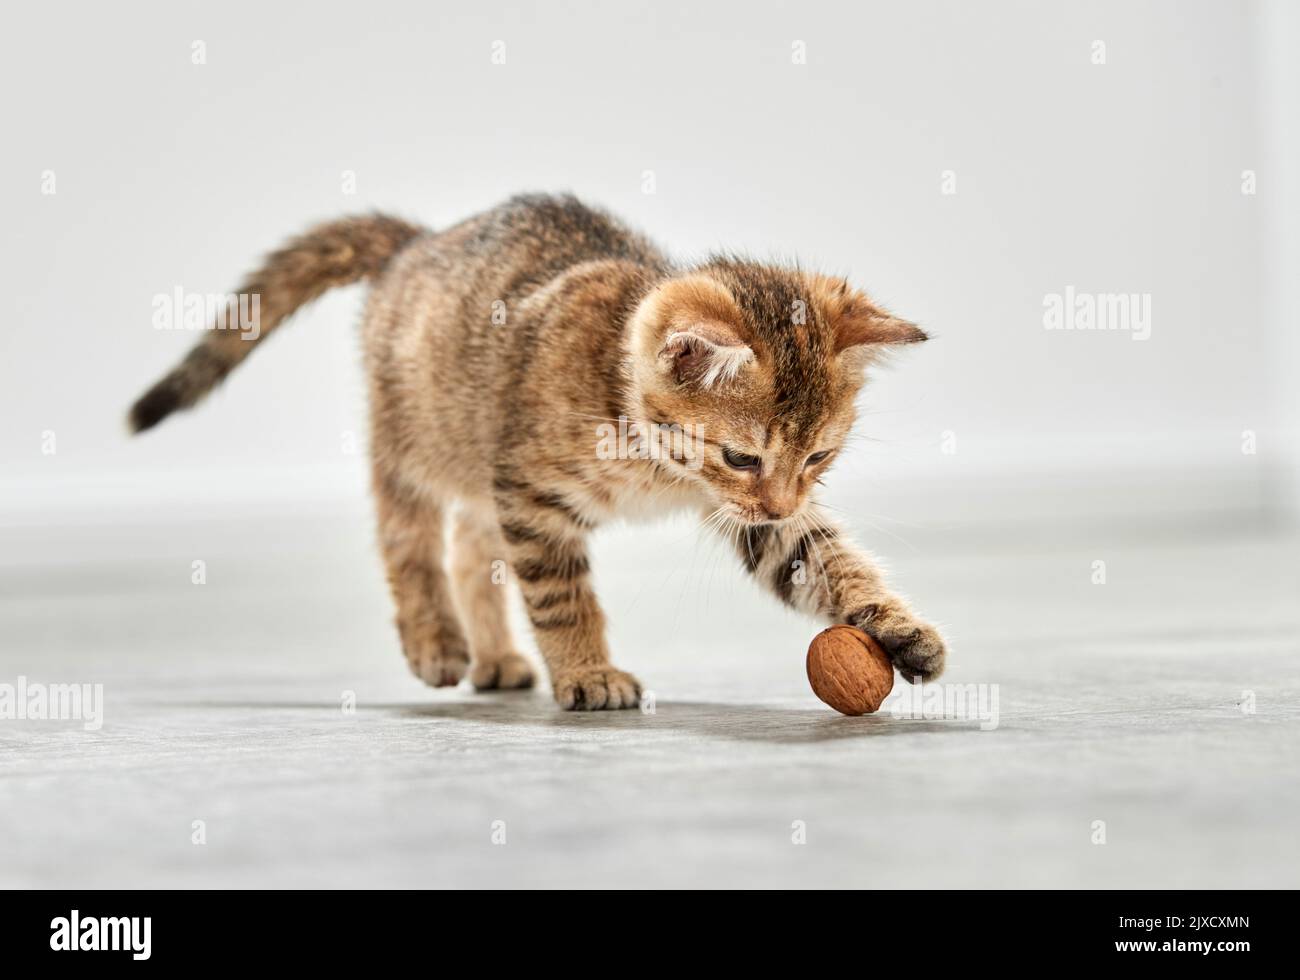 Chat domestique Un chaton tabby joue avec un noyer. Allemagne Banque D'Images